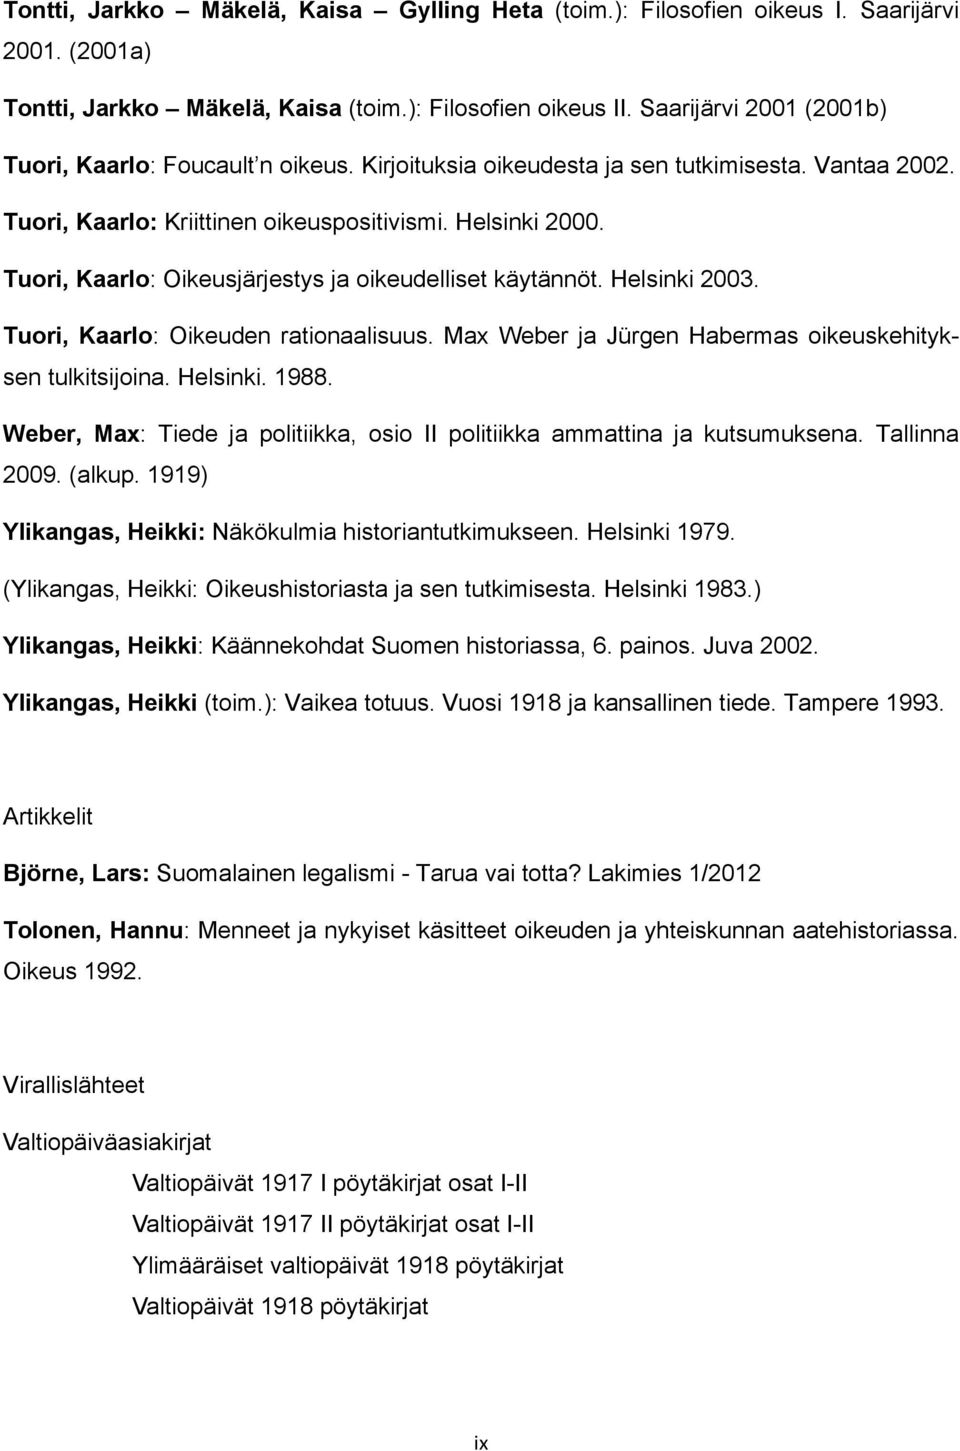 Tuori, Kaarlo: Oikeusjärjestys ja oikeudelliset käytännöt. Helsinki 2003. Tuori, Kaarlo: Oikeuden rationaalisuus. Max Weber ja Jürgen Habermas oikeuskehityksen tulkitsijoina. Helsinki. 1988.